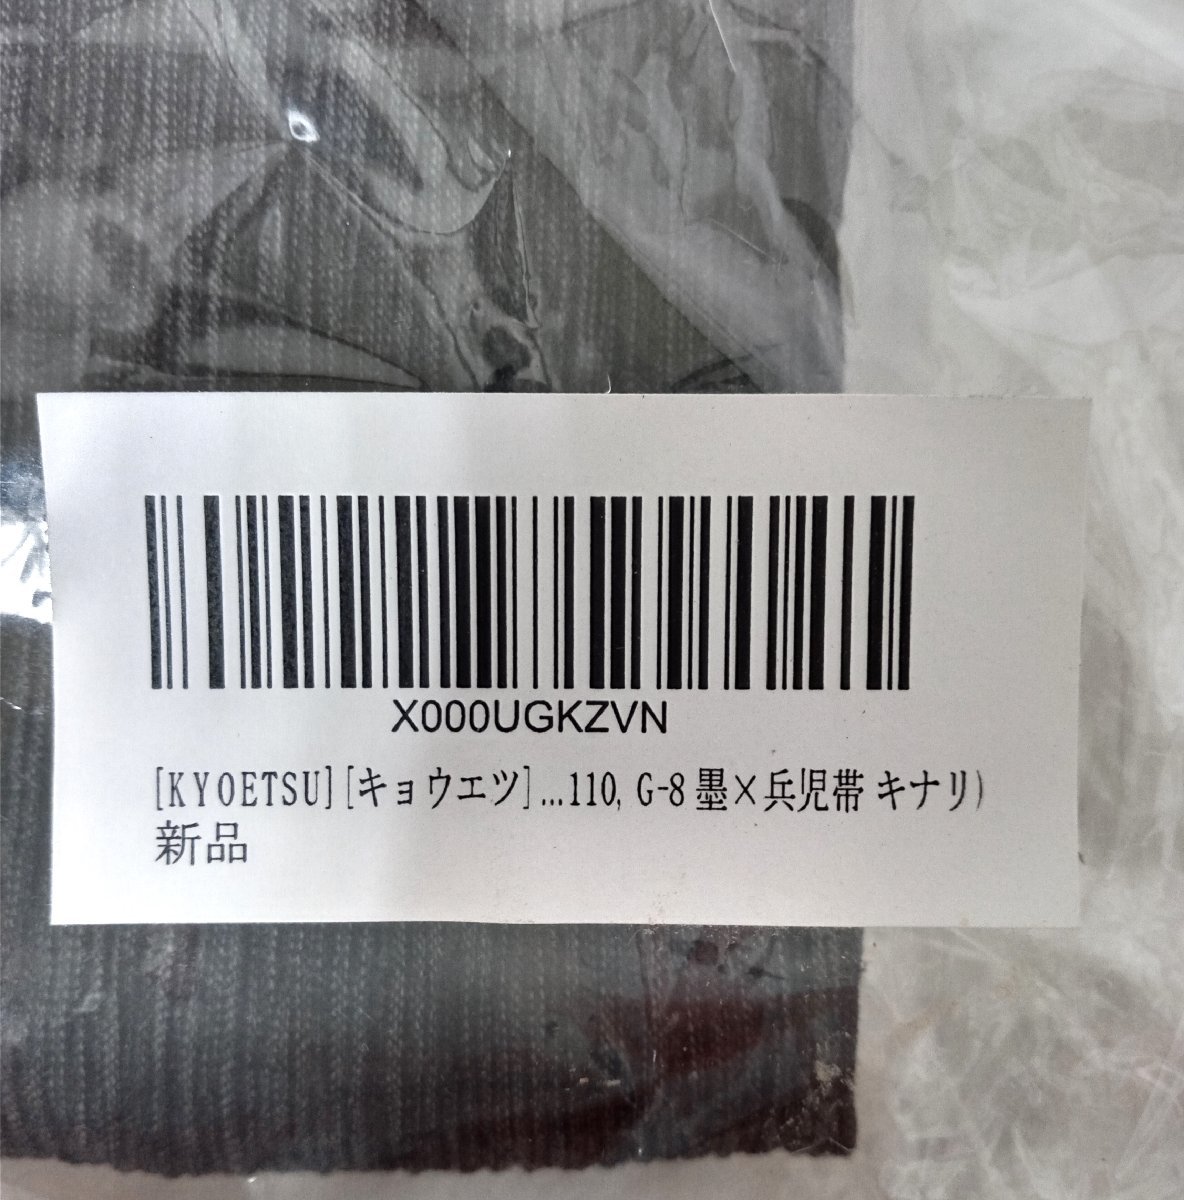 *KYOETSU both etsu мужчина юката комплект G-8.× пояс хекооби kinali110 размер *.. надеты .. есть дизайн . симпатичный 2,991 иен 